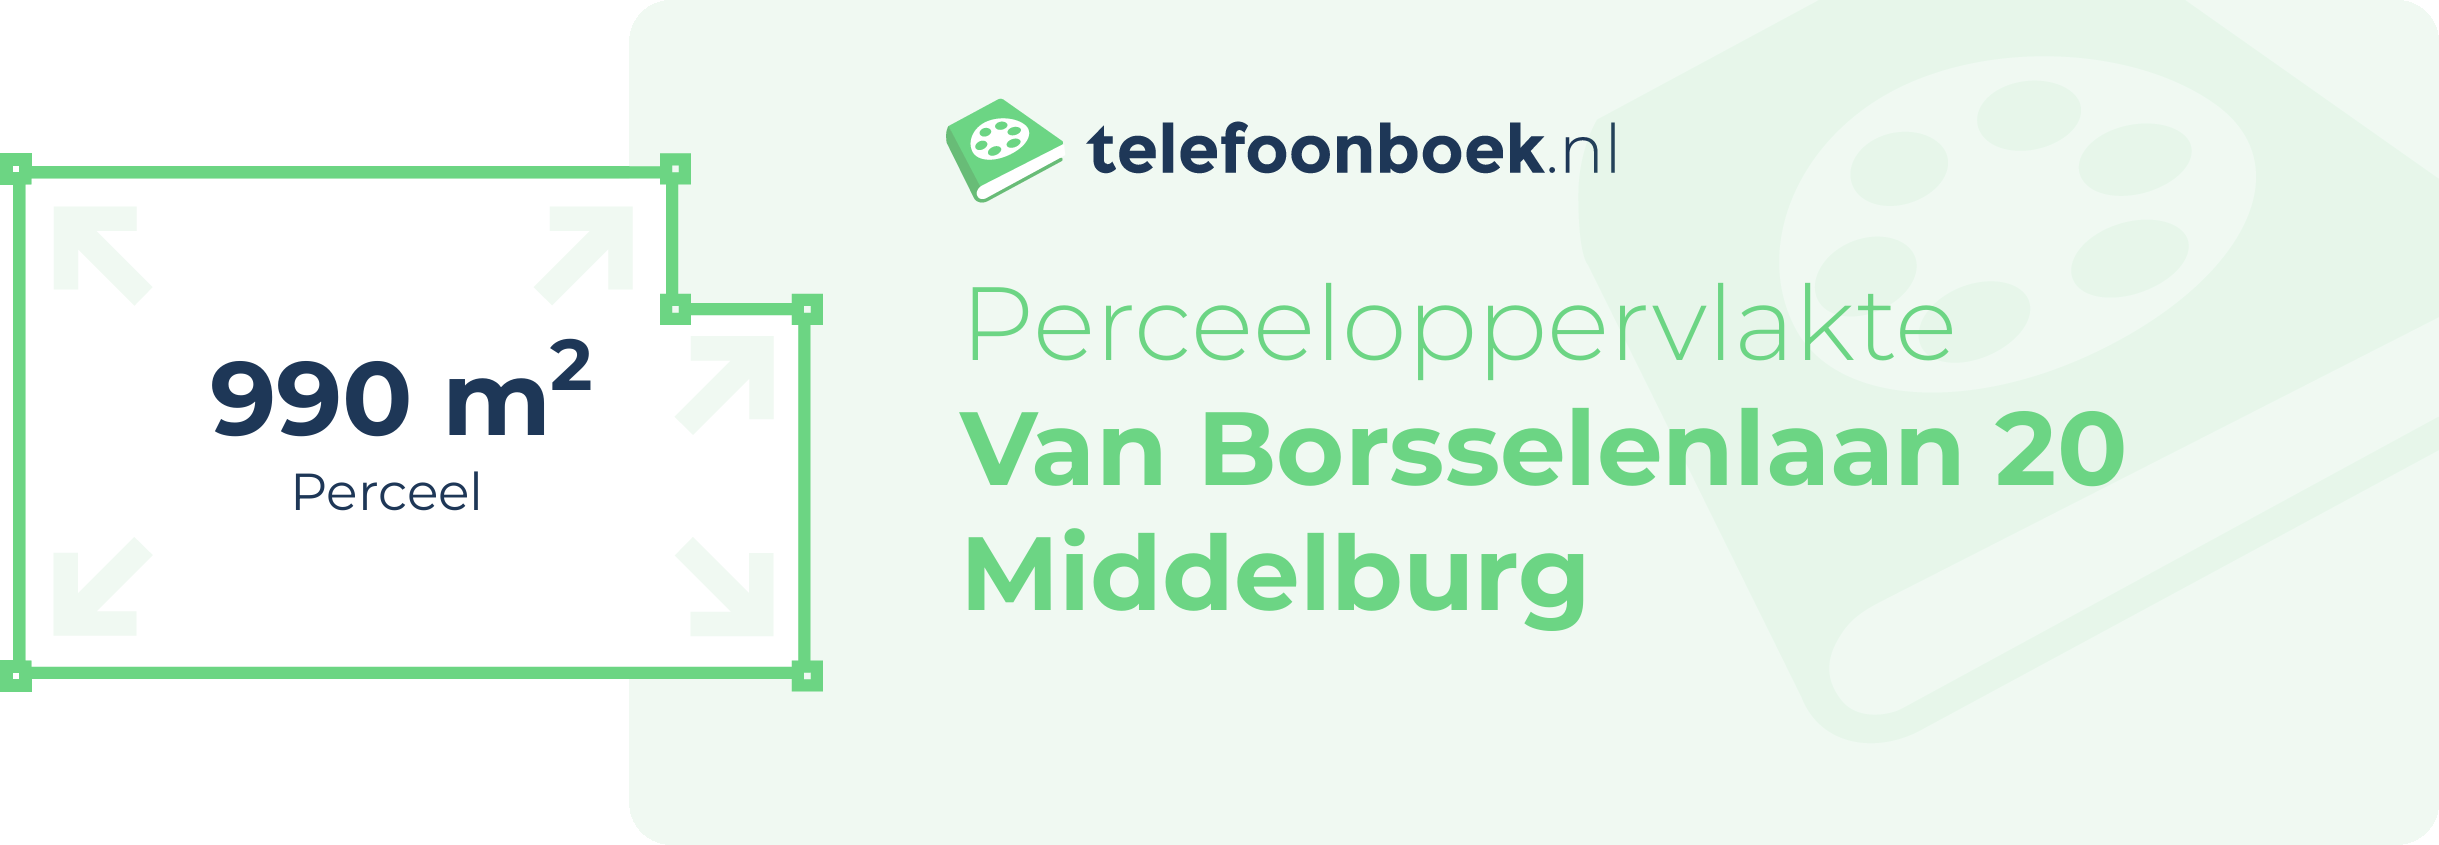 Perceeloppervlakte Van Borsselenlaan 20 Middelburg